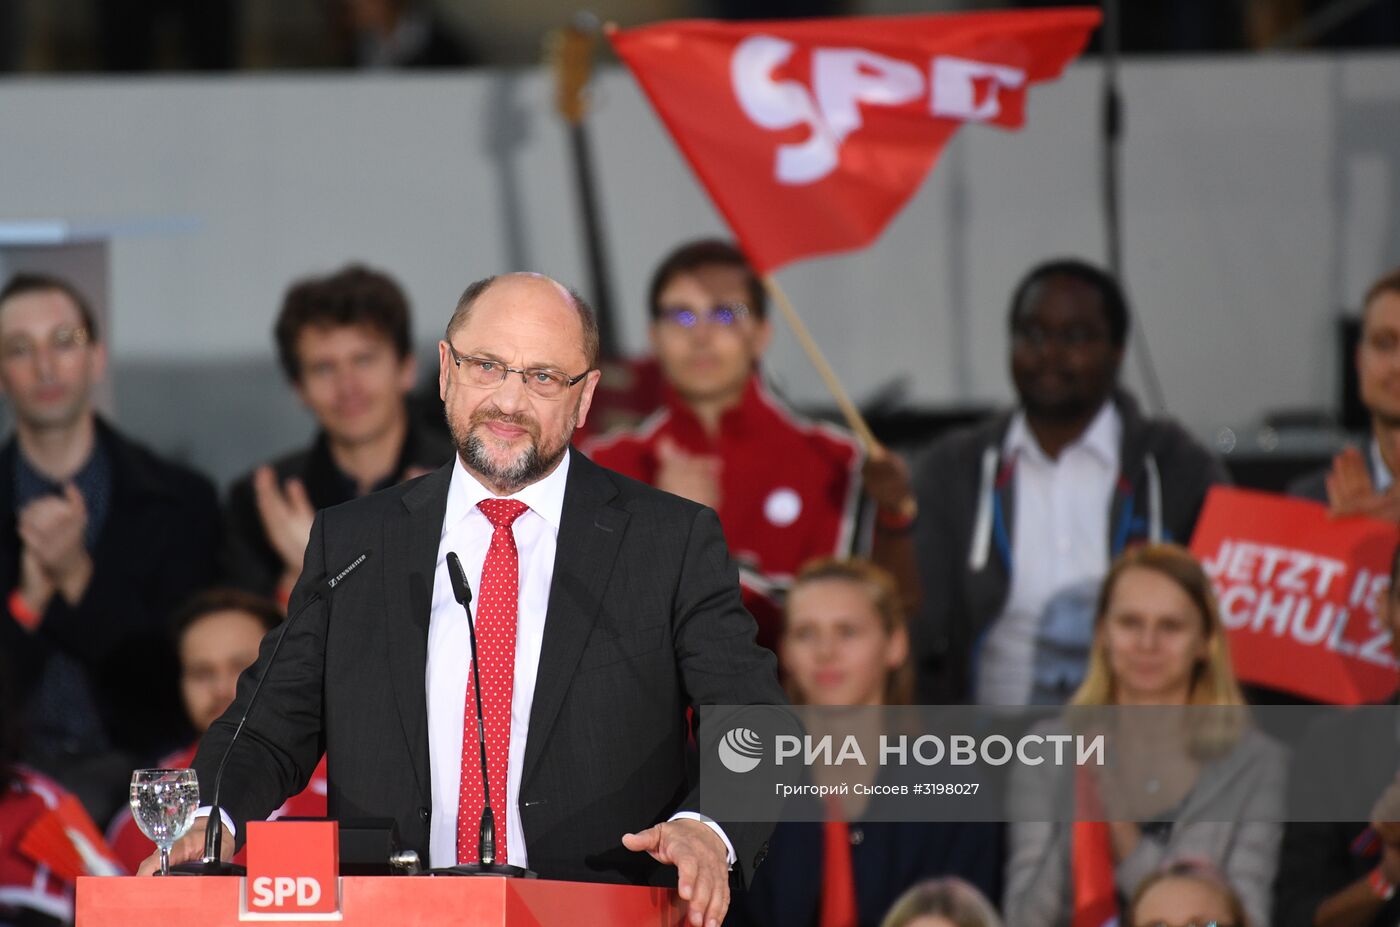 Предвыборное выступление кандидата на пост канцлера Германии М. Шульца